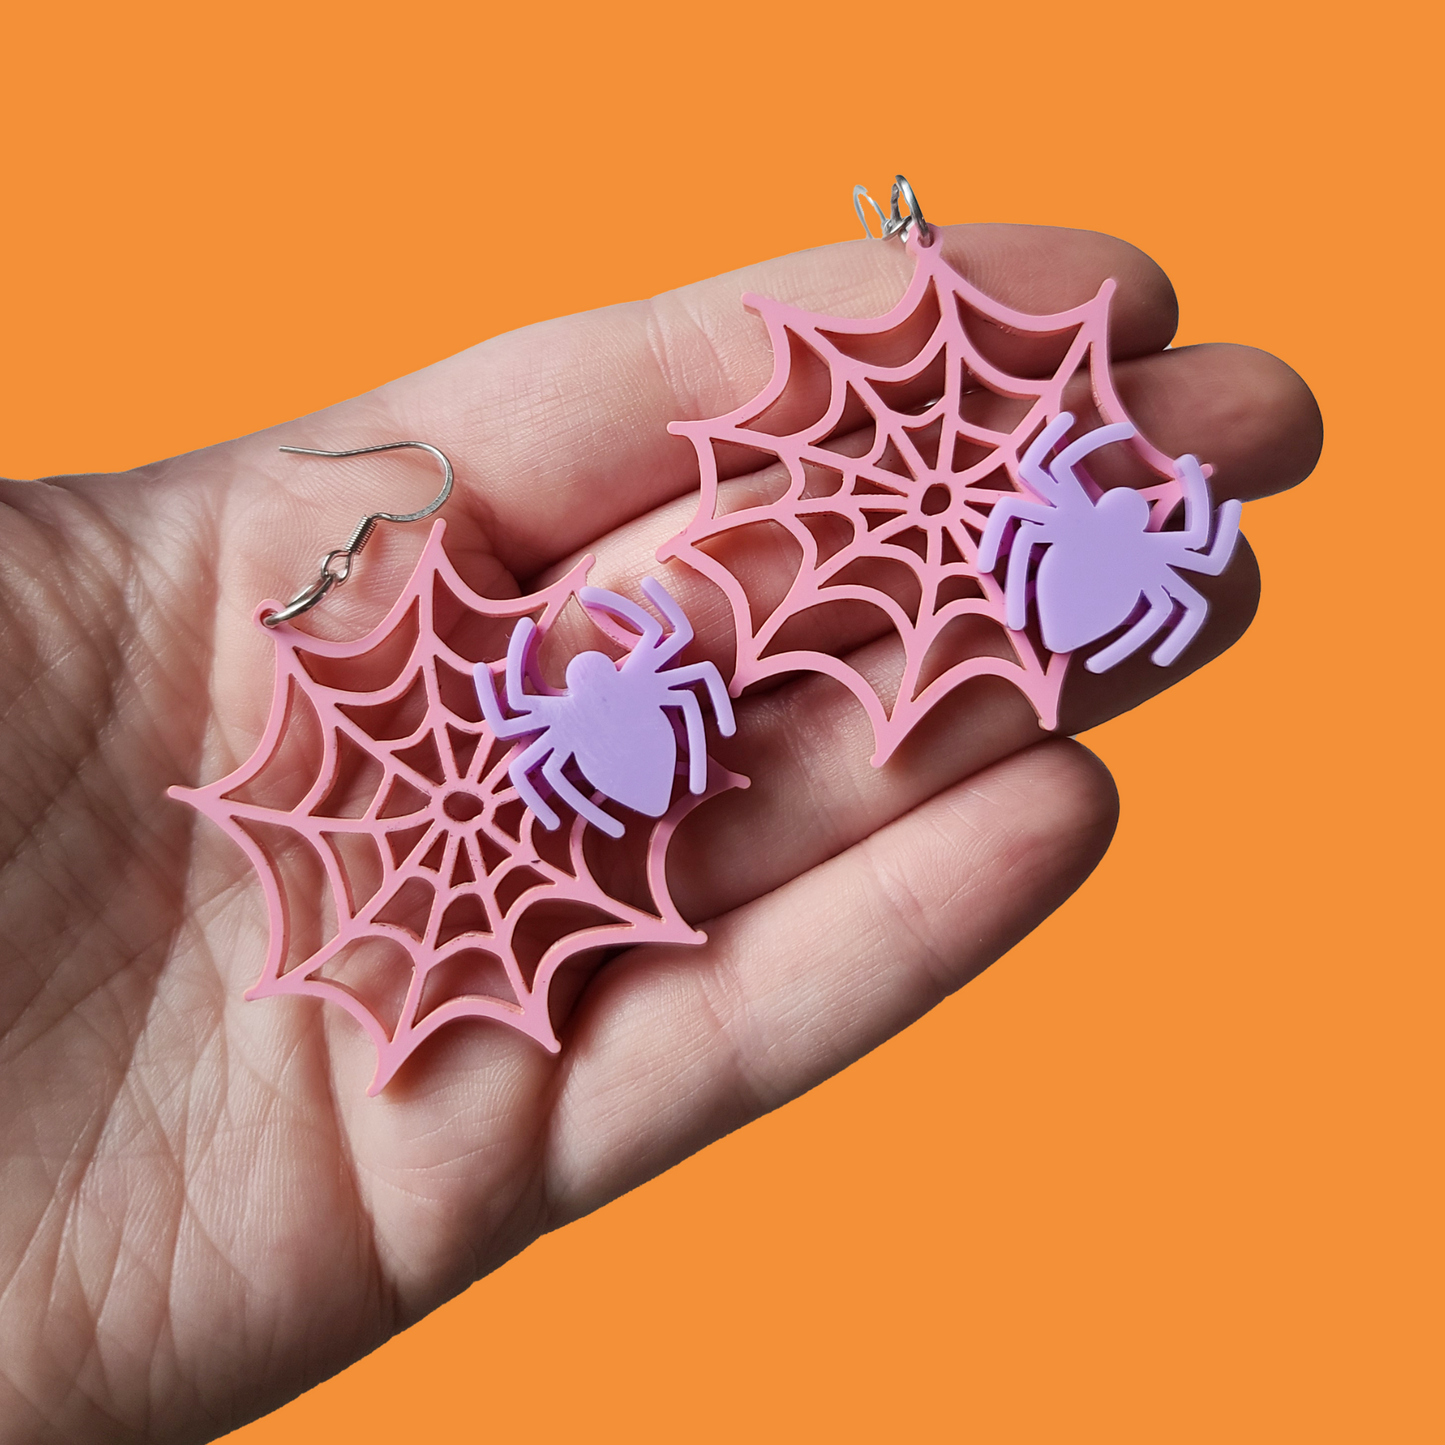 Pastel Spiderwebs - Earrings - Laser Cut